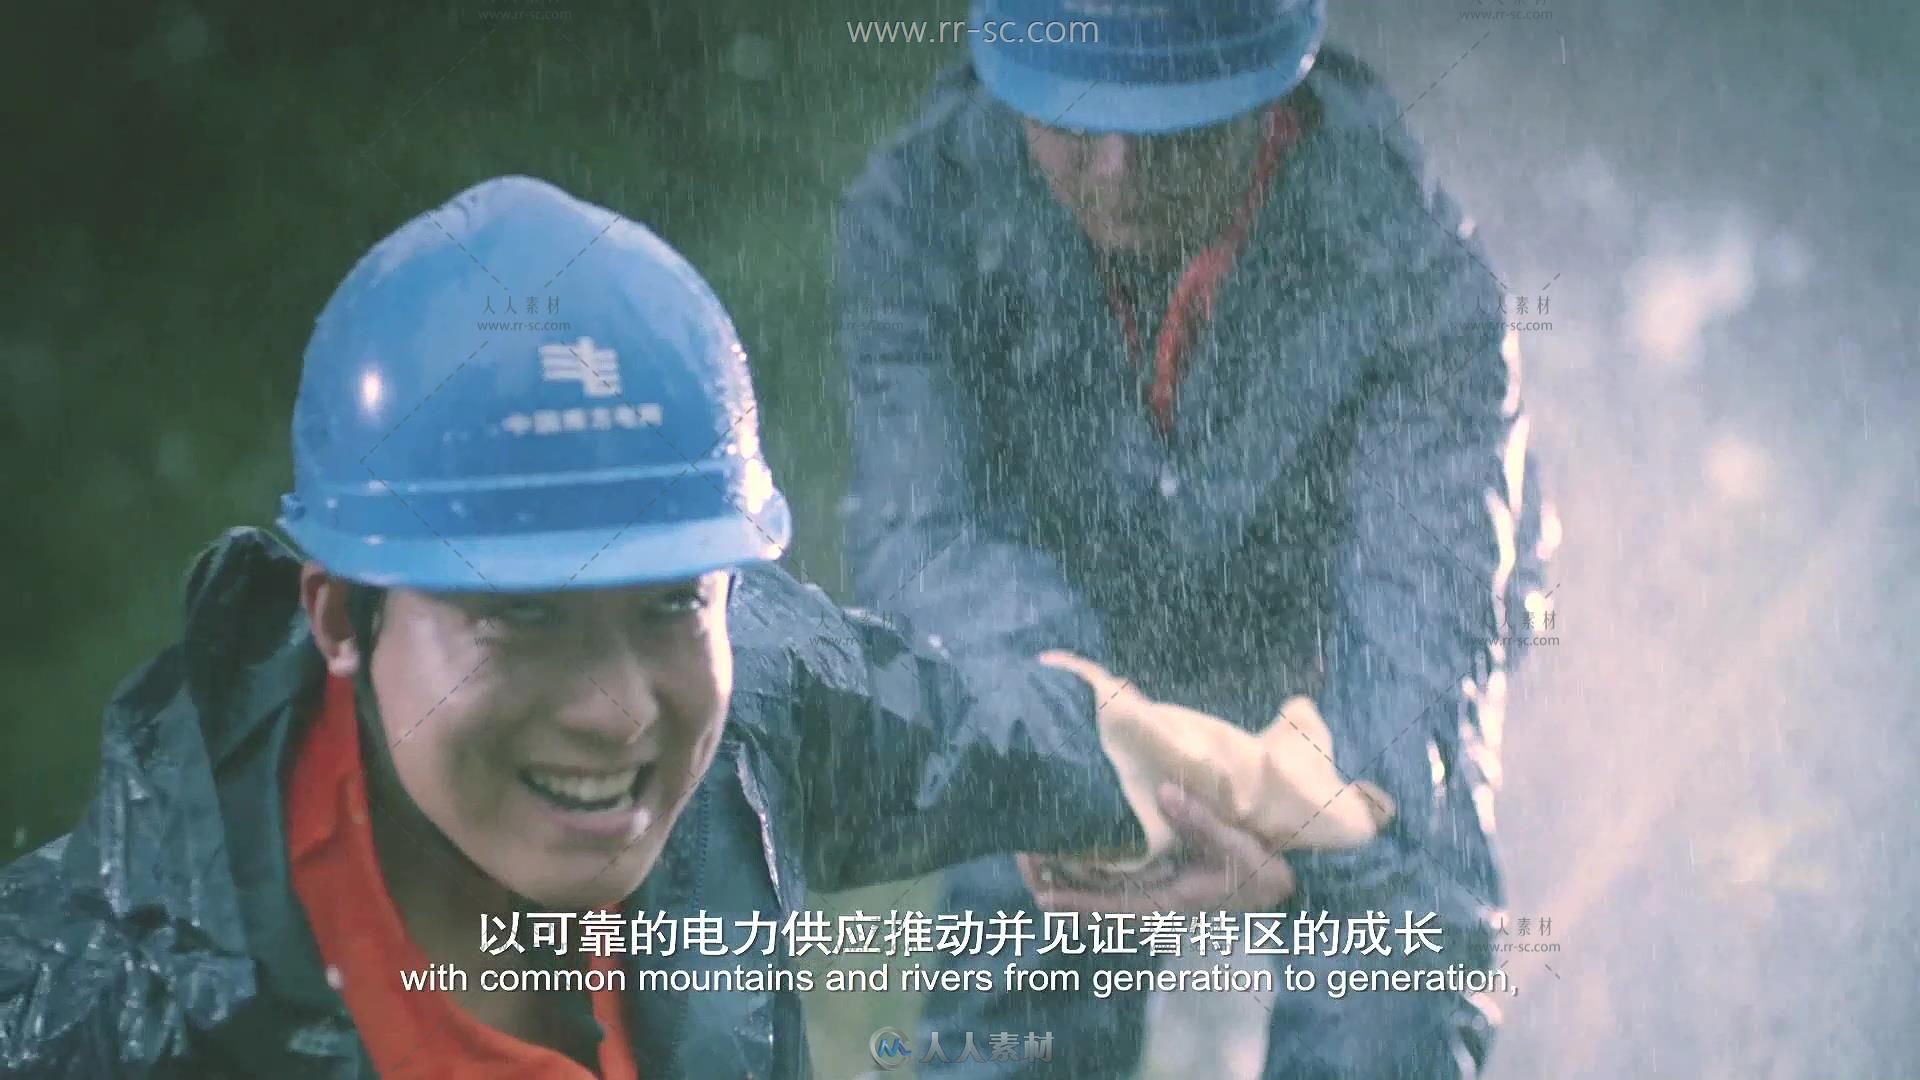 深圳电网企业形象片宣传片高清实拍视频素材 